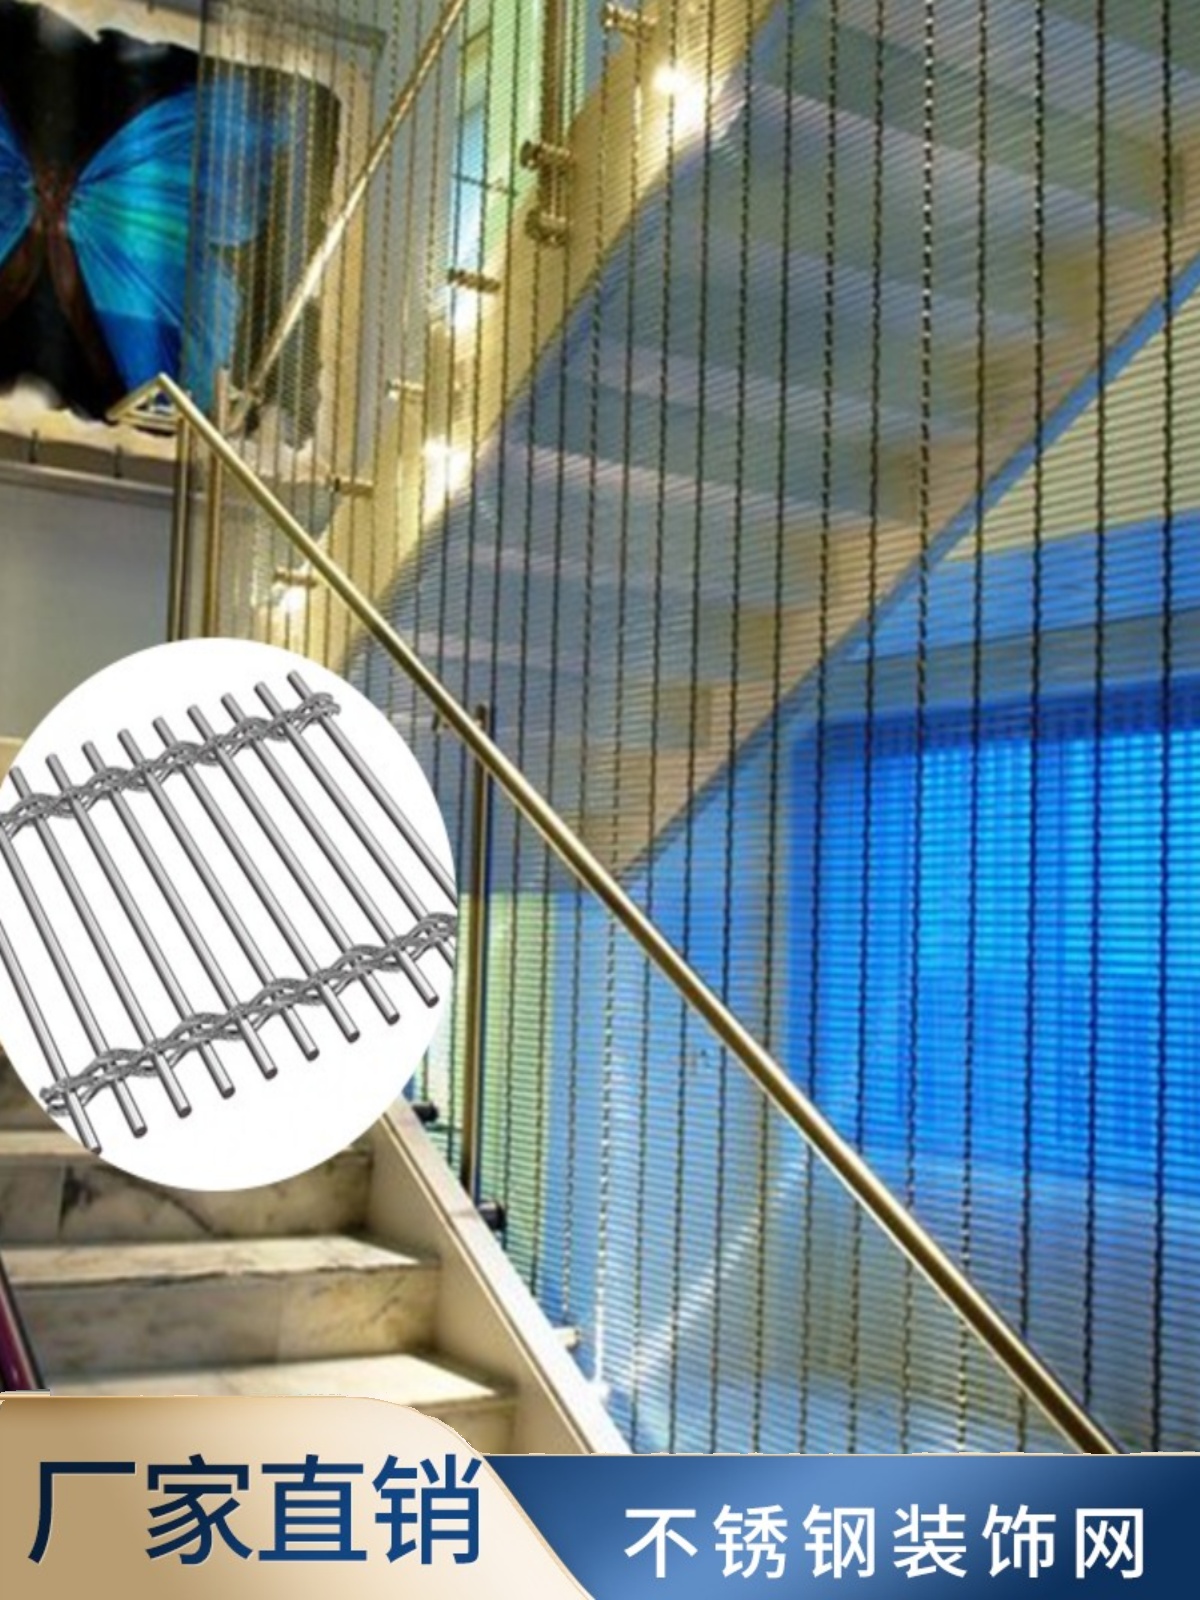 定制金属不锈钢编织装饰古铜氟碳幕墙悬吊式天花板隔断屏风电梯夹